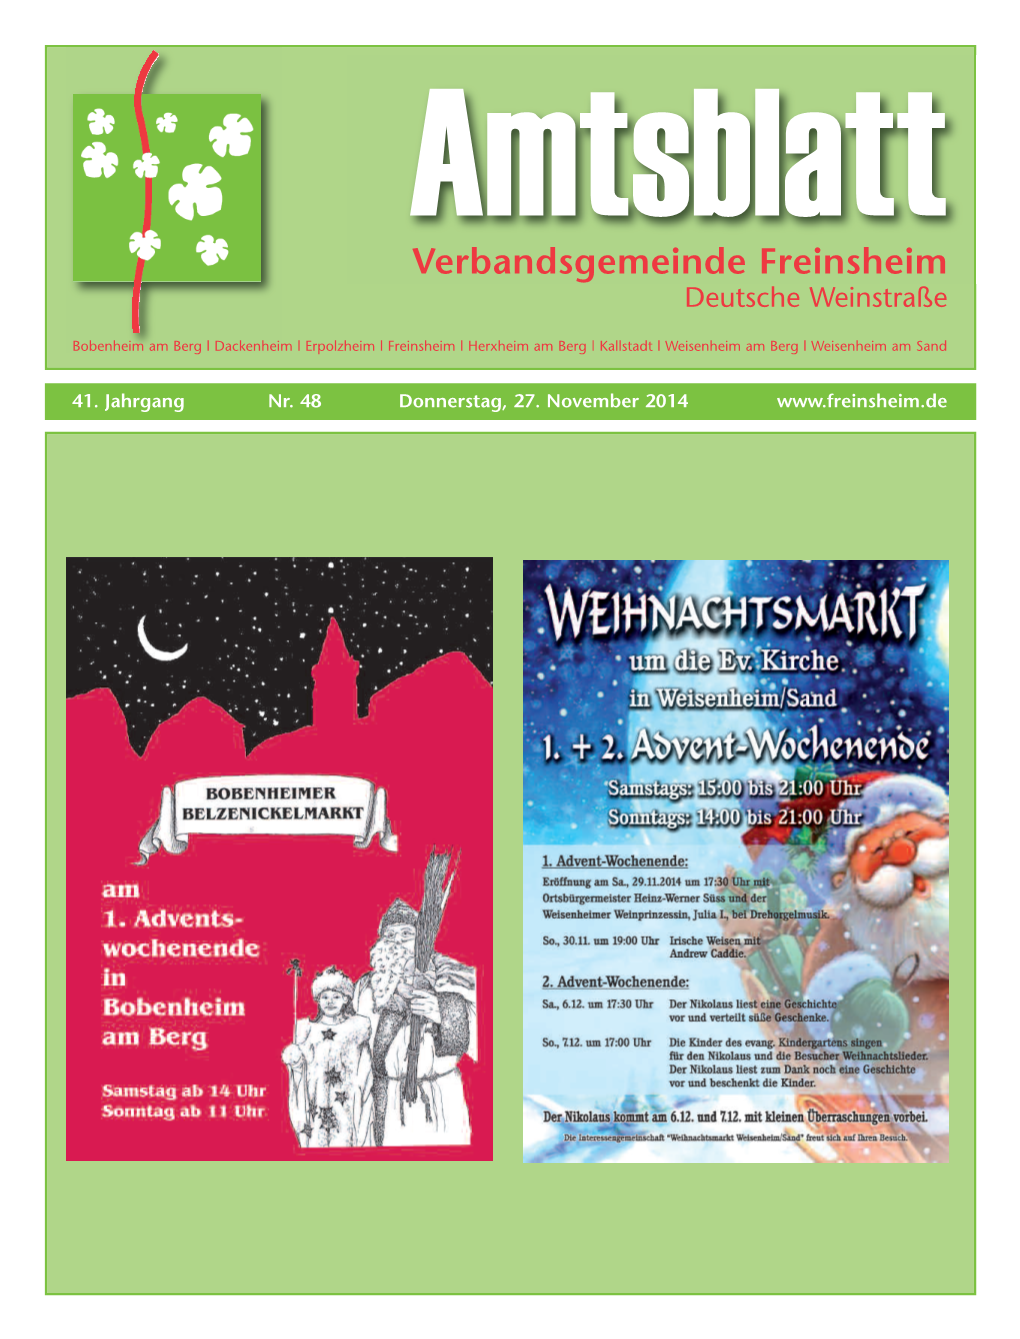 Amtsblatt Verbandsgemeinde Freinsheim Deutsche Weinstraße